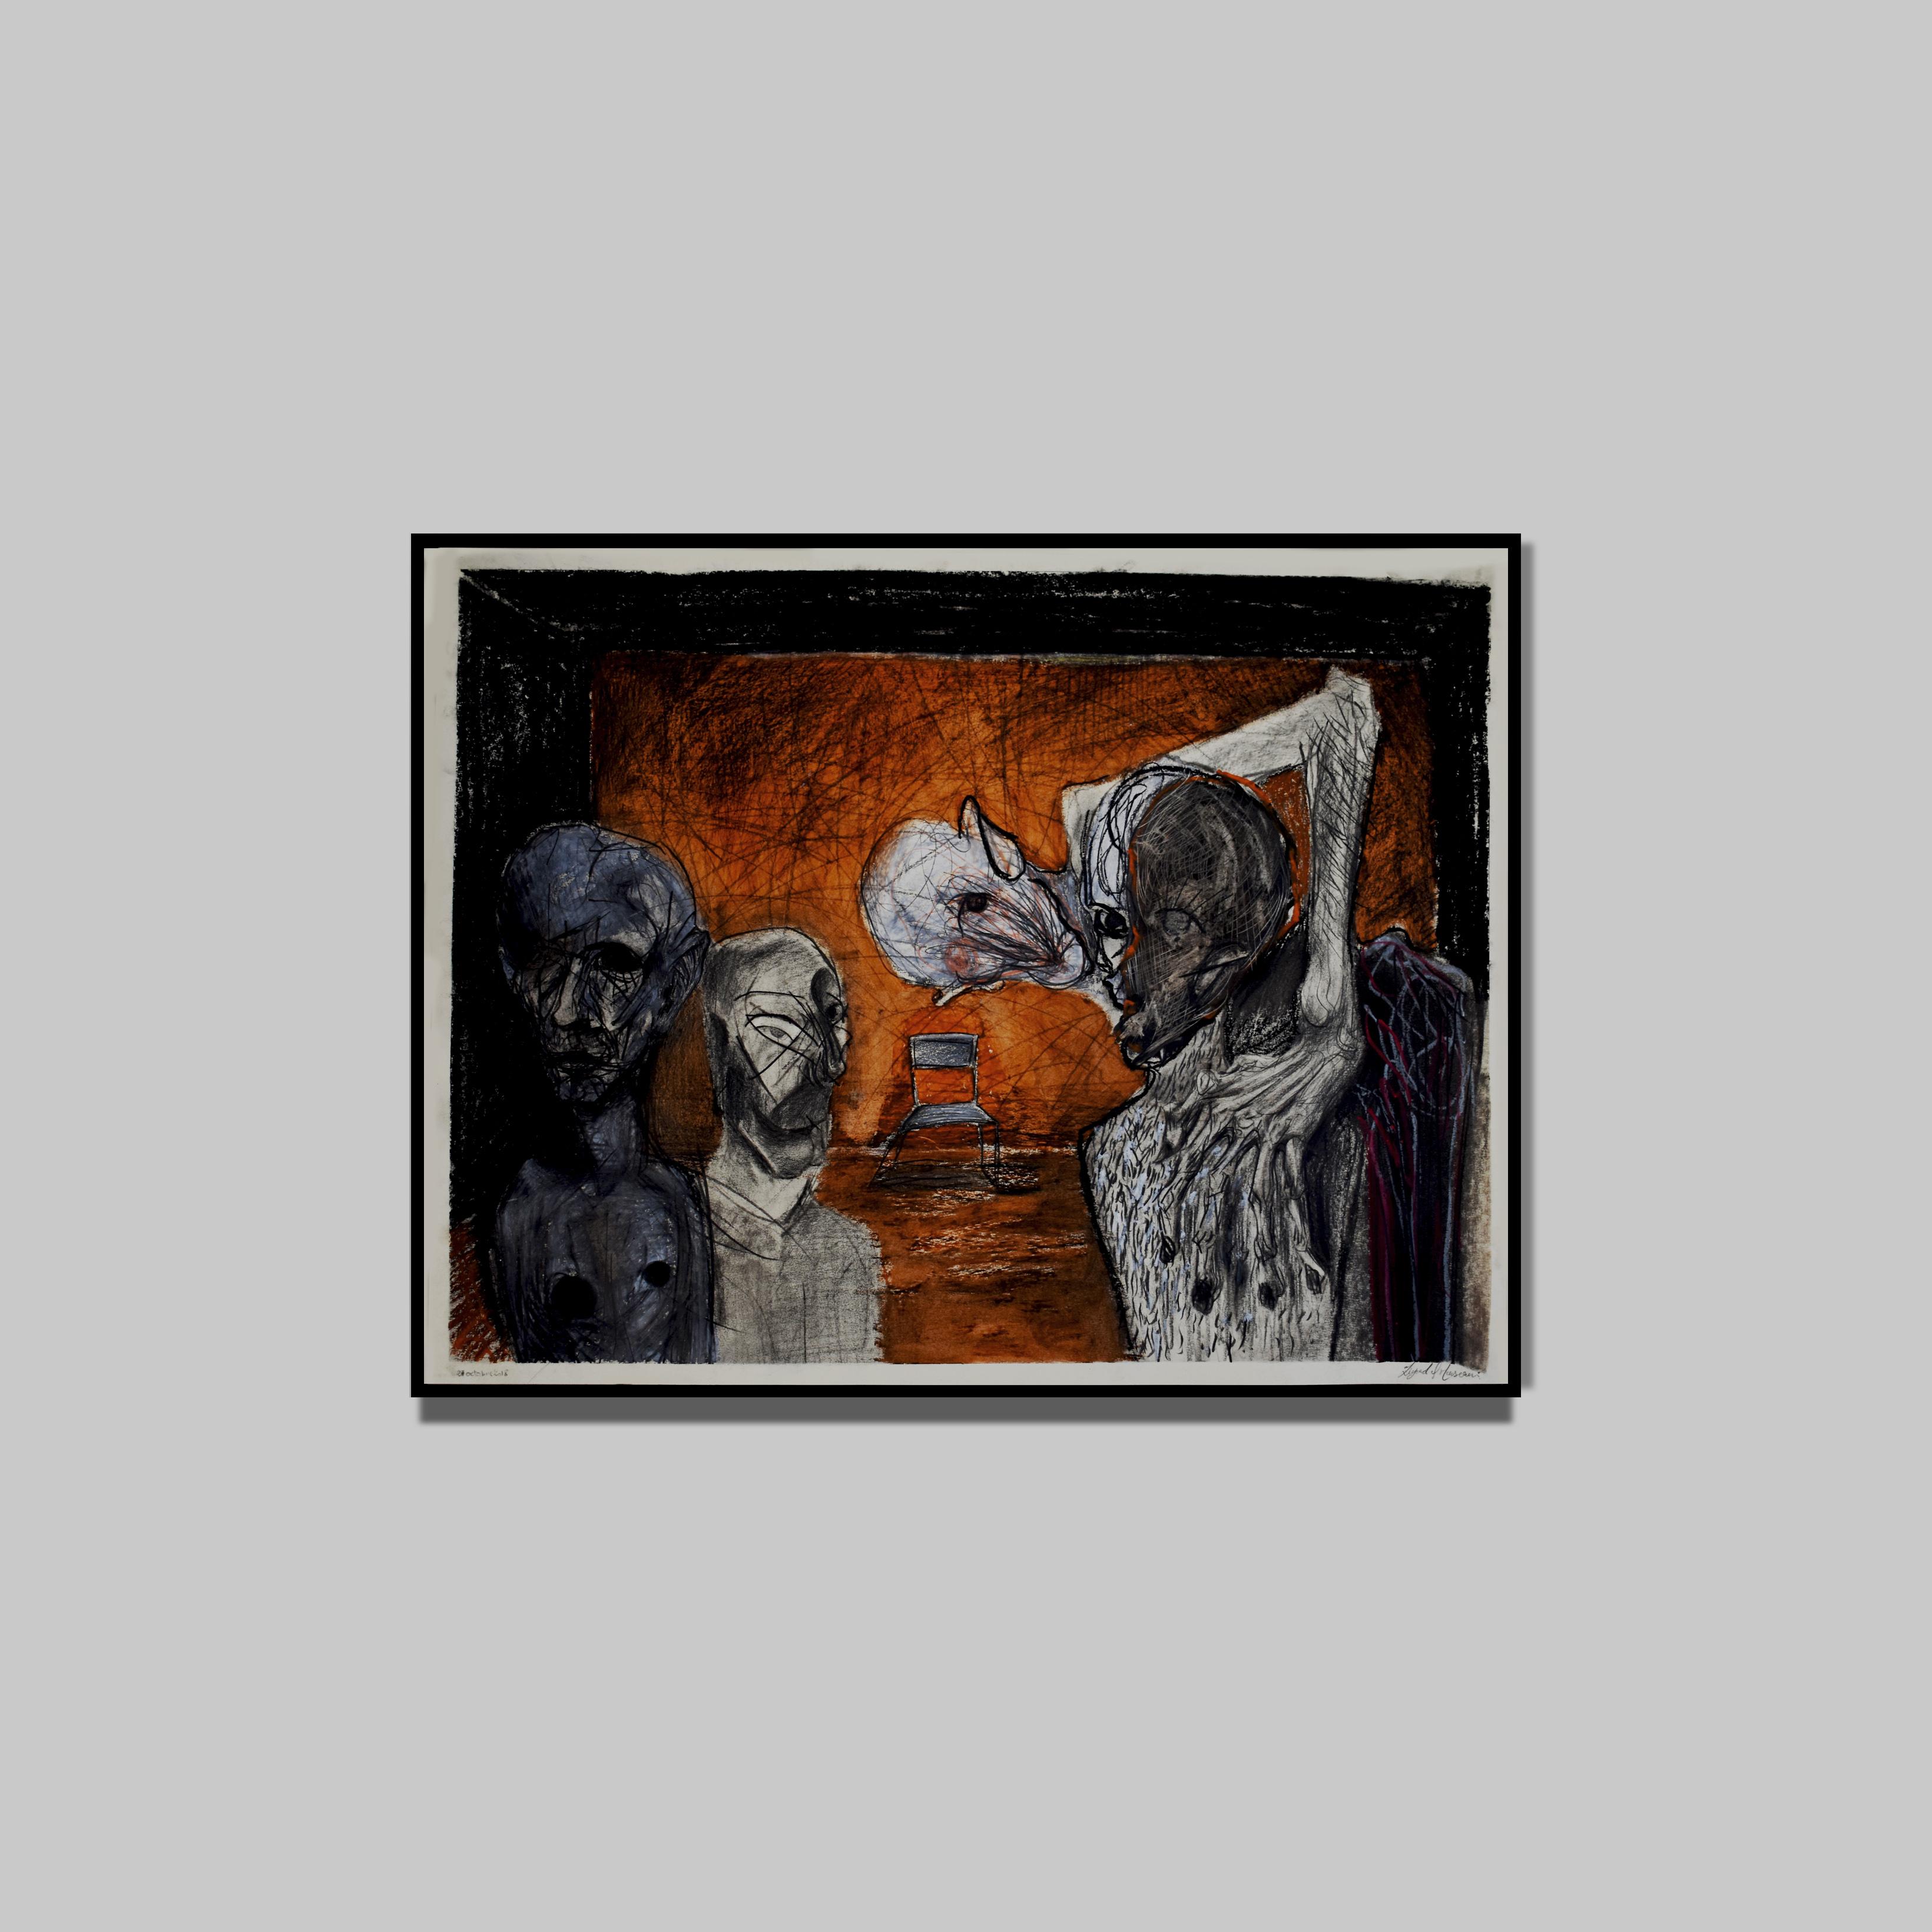 Ziyad El Mansouri
Composition NO.2, 2019
Pastel à l'huile et fusain sur papier
50 x 65 cm